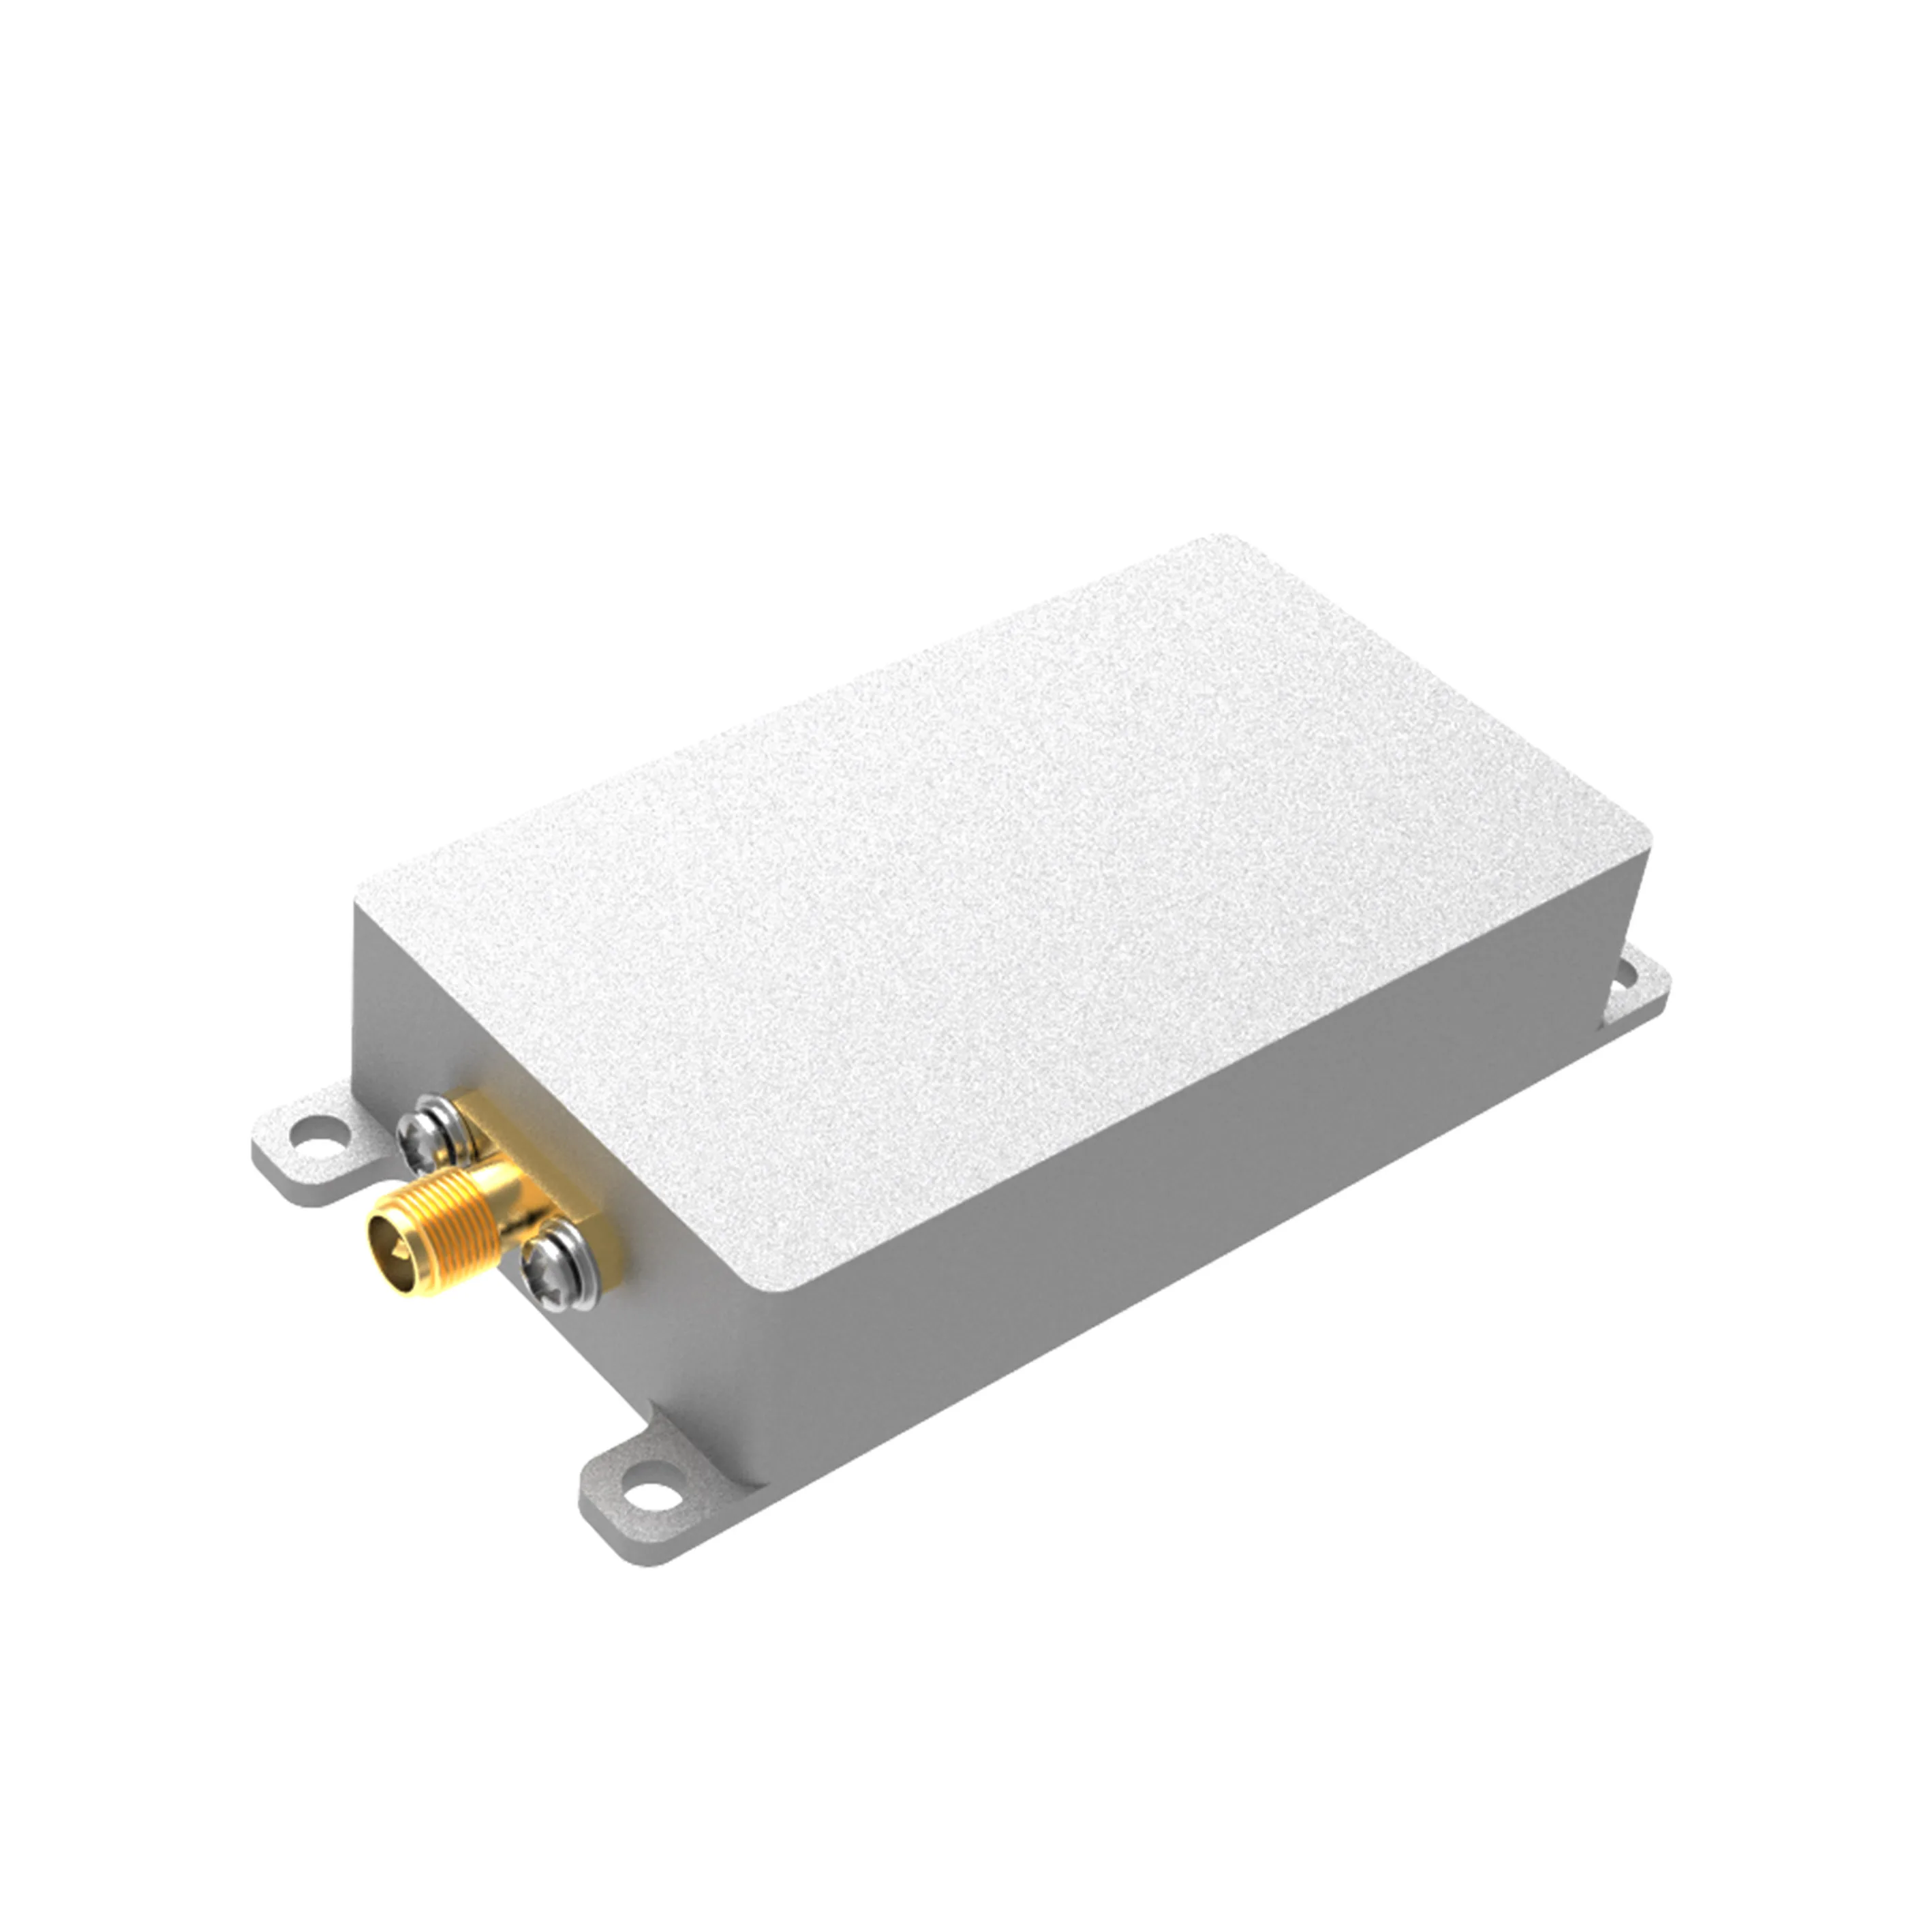 SZHUASHI-Low-Power Sweep Signal Source Shielding Module,Customizable Series, 3.5GHz, 5W, 37dBm, YJM3505B, 100% New